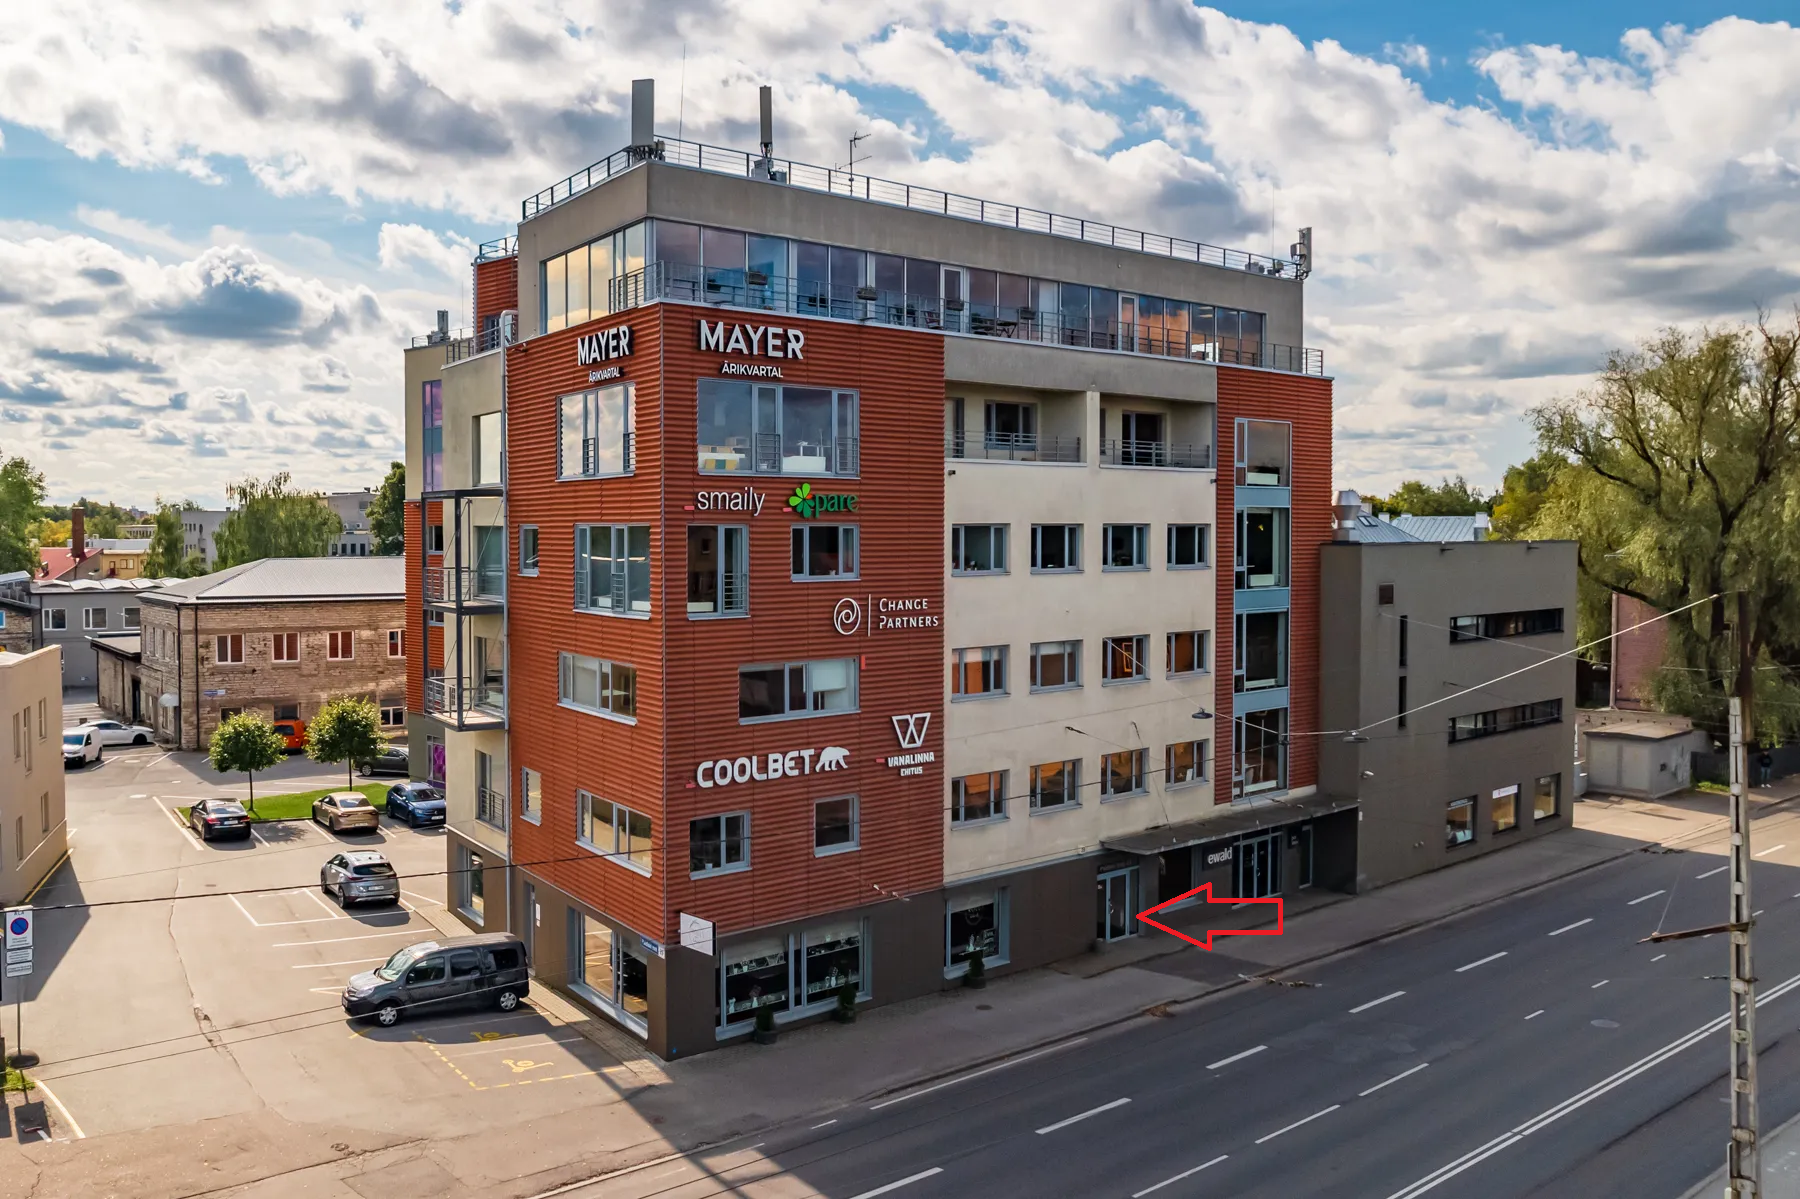 K Security uus kontor Tallinna kesklinnna piiril